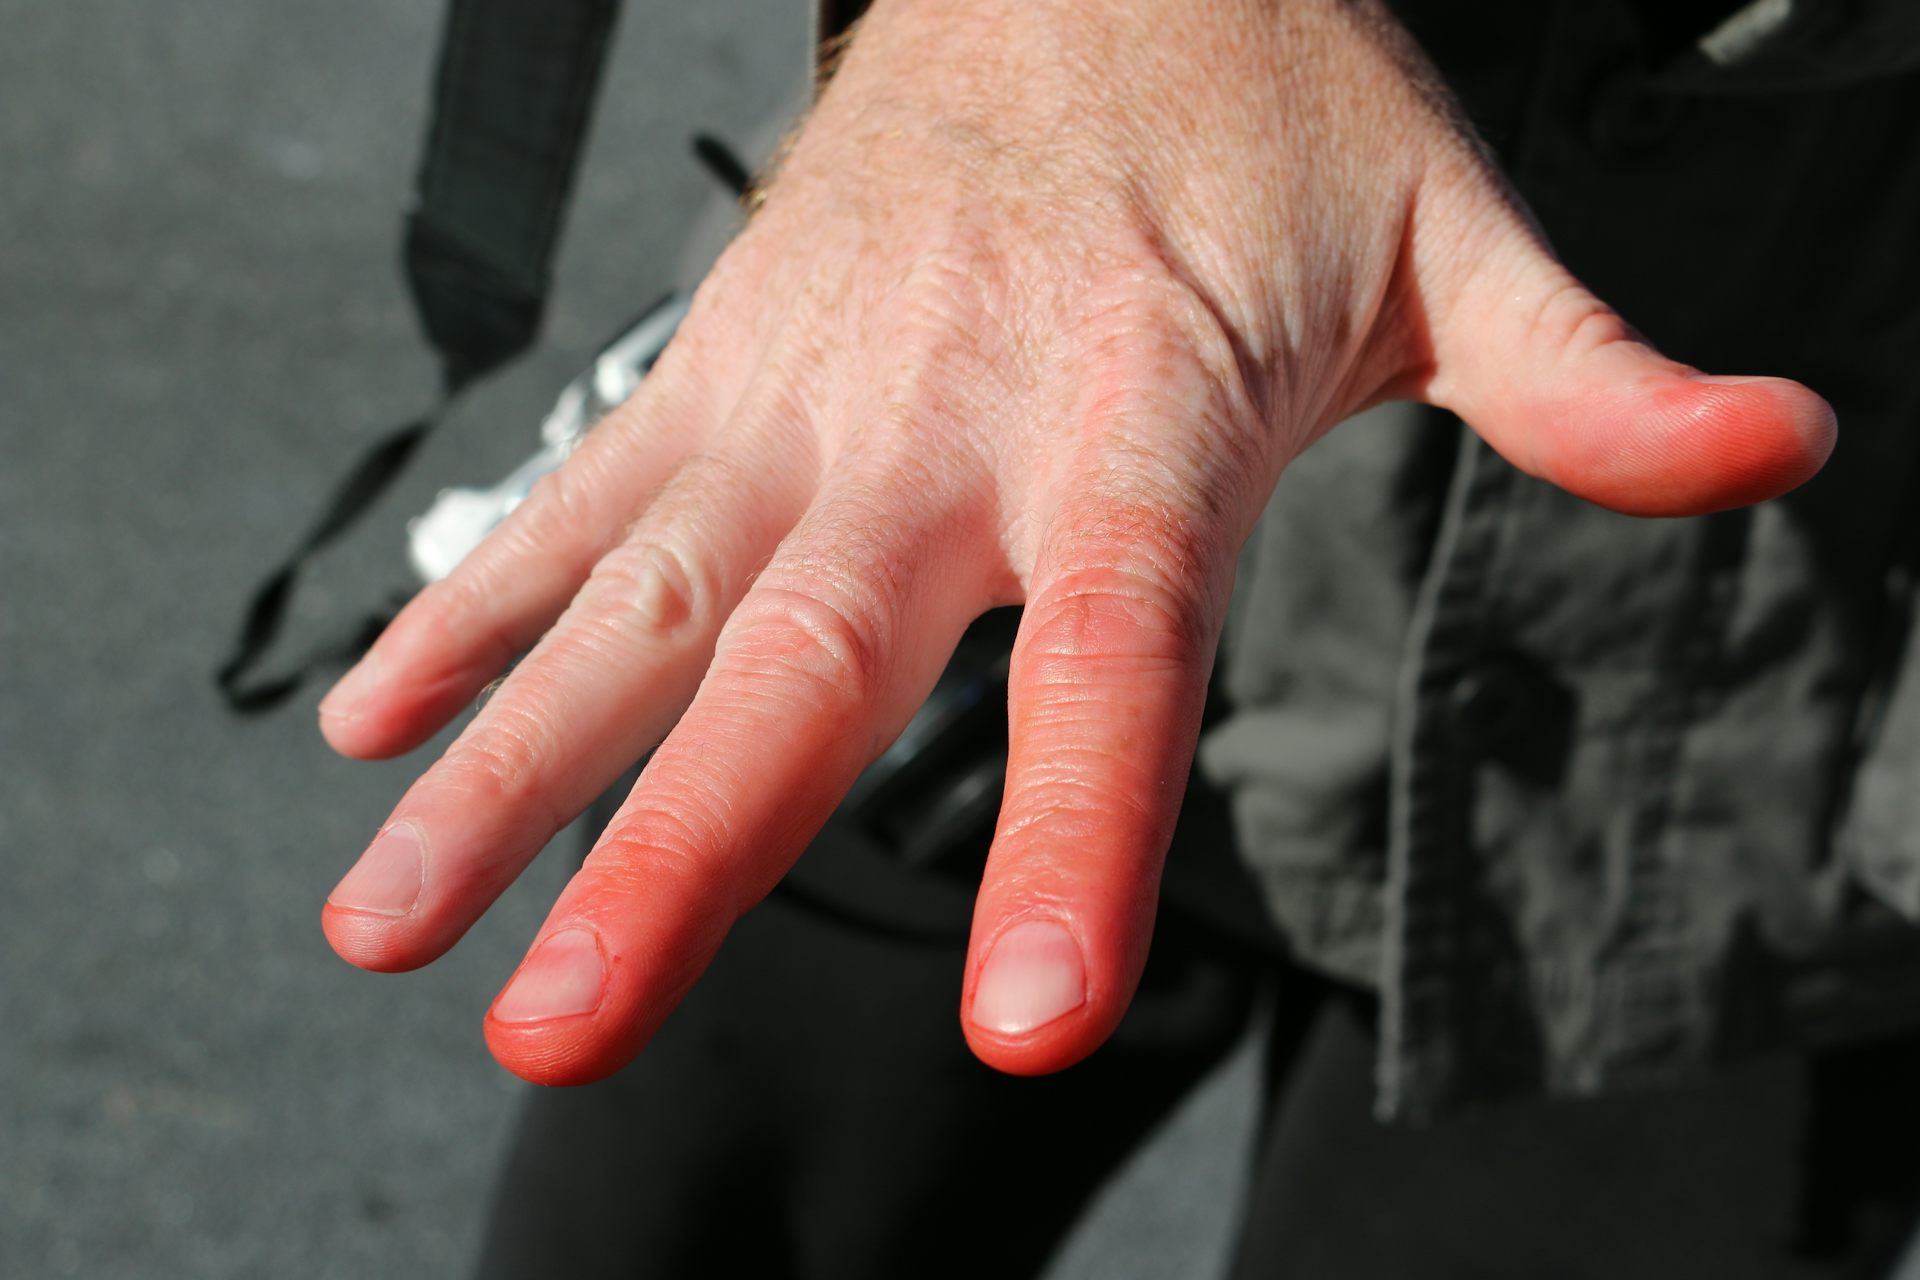  Les doigts sont devenus rouges par des engelures.